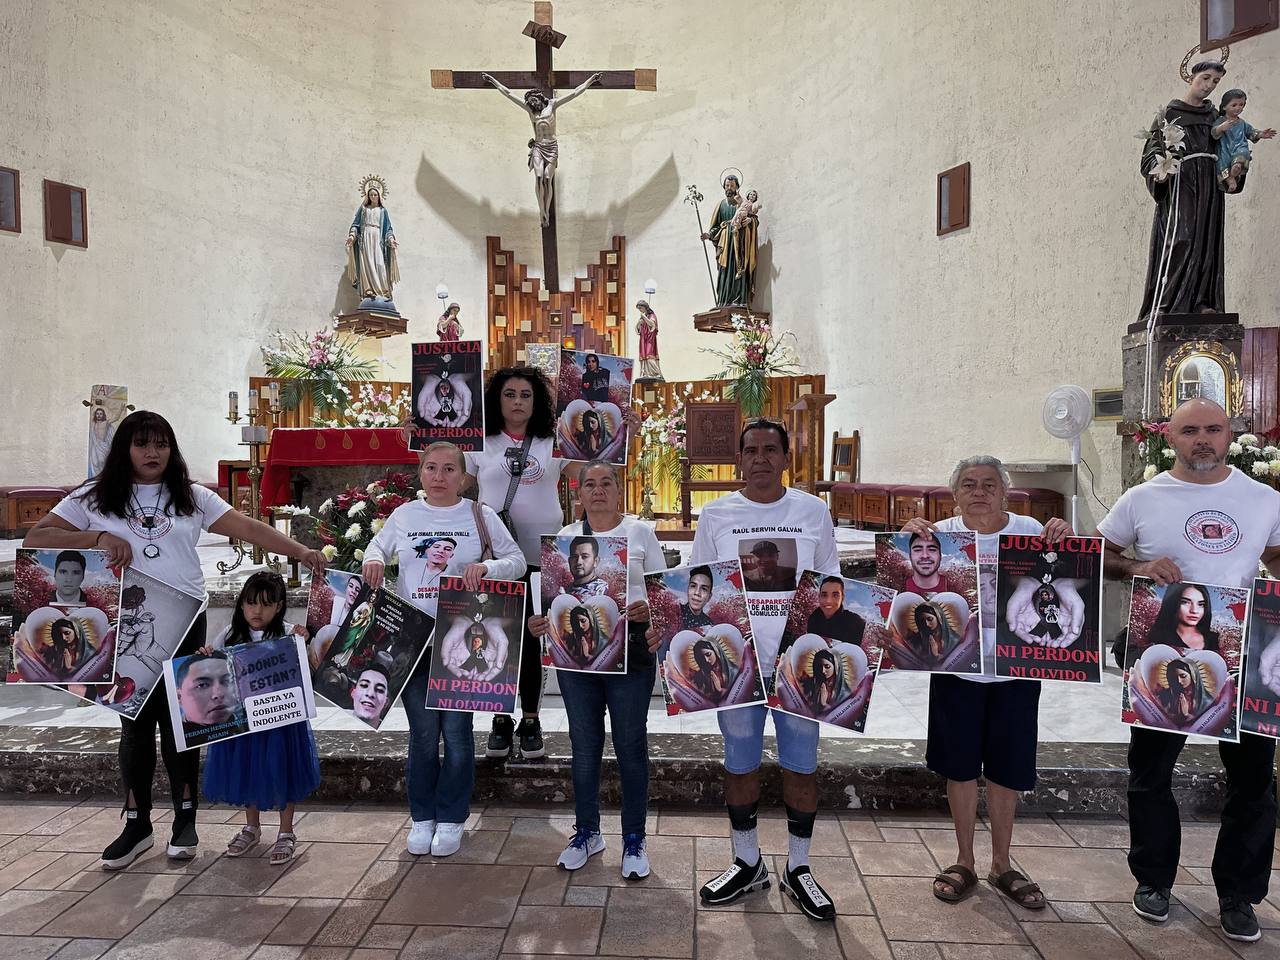 “El siempre está presente en mi corazón”: A dos años de la desaparición de Fermín Hernández 